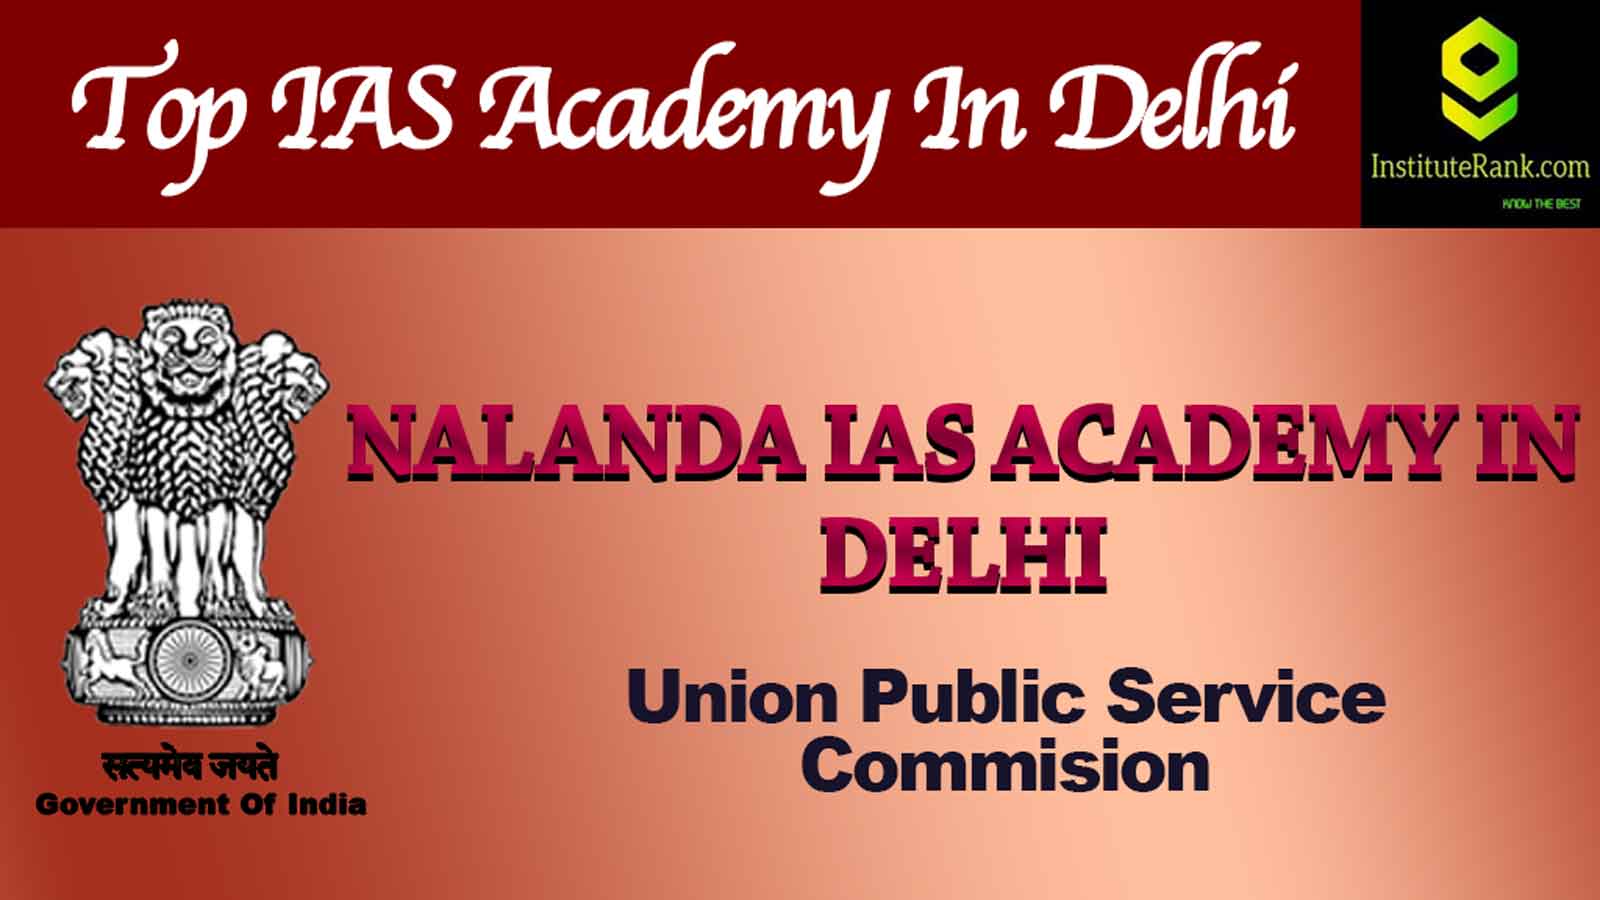 Nalanda IAS Academy in Delhi